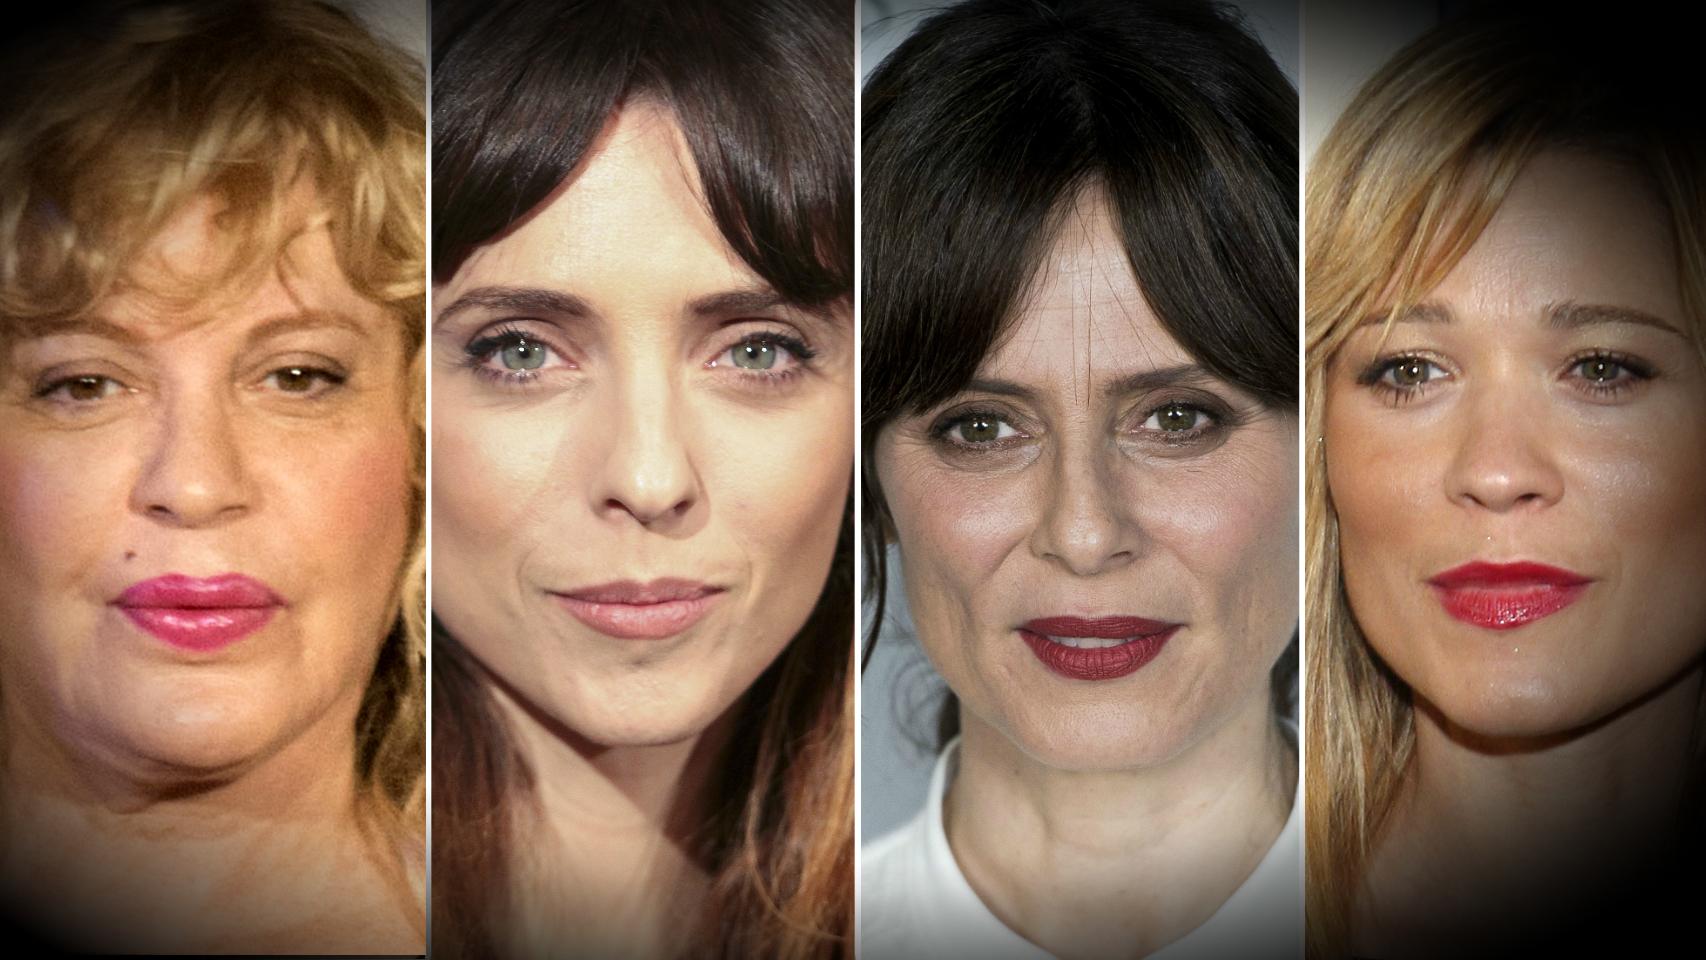 El acoso sexual llega al cine español estas son las actrices que lo denuncian